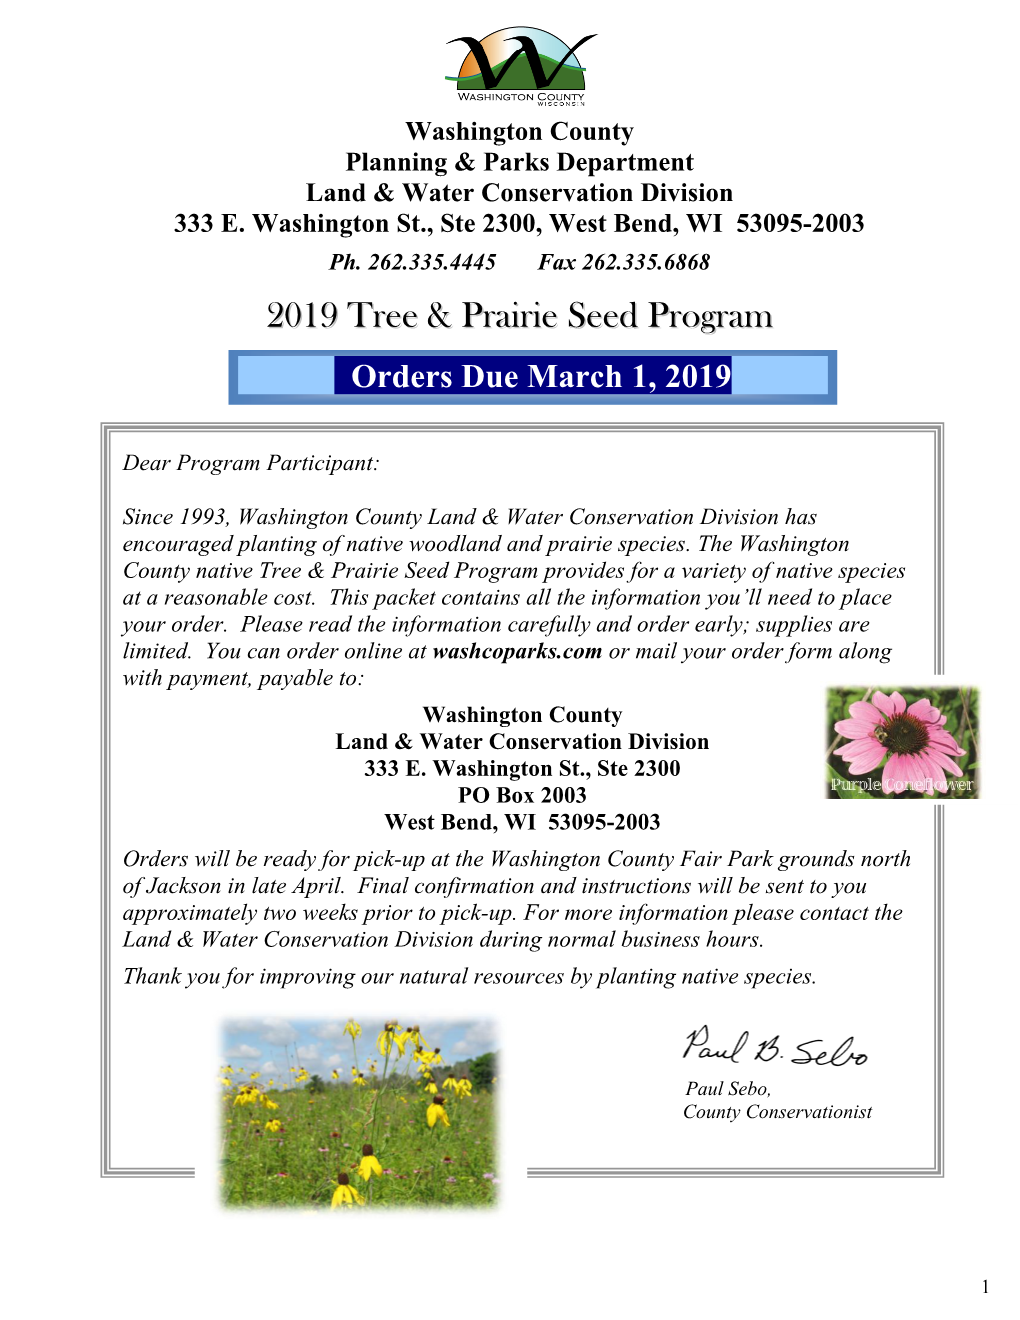 2019 Tree & Prairie Seed Program